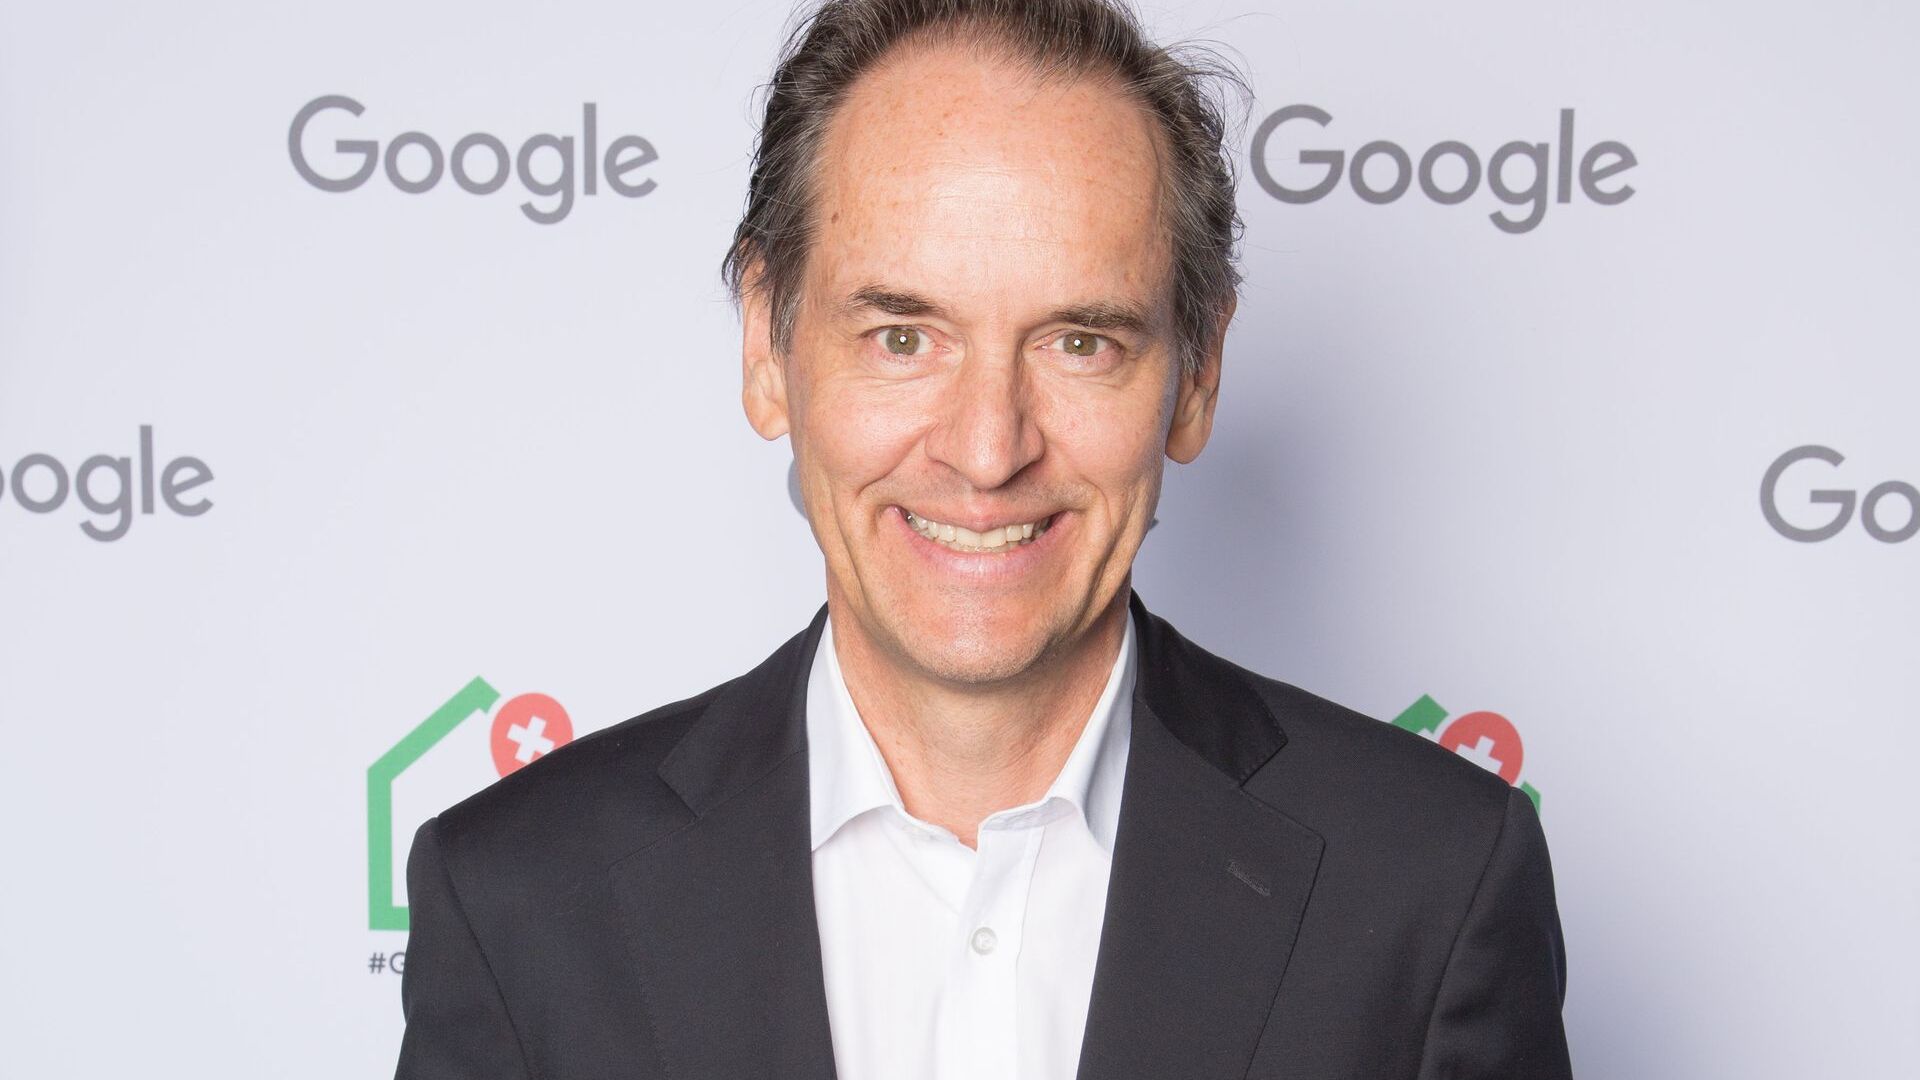 Google-ի Շվեյցարիայի տեղական տնօրեն Պատրիկ Ուորնինգը մասնակցել է նոր Google Campus Europaallee-ի պաշտոնական բացմանը Ցյուրիխում 27 թվականի հունիսի 2022-ին։